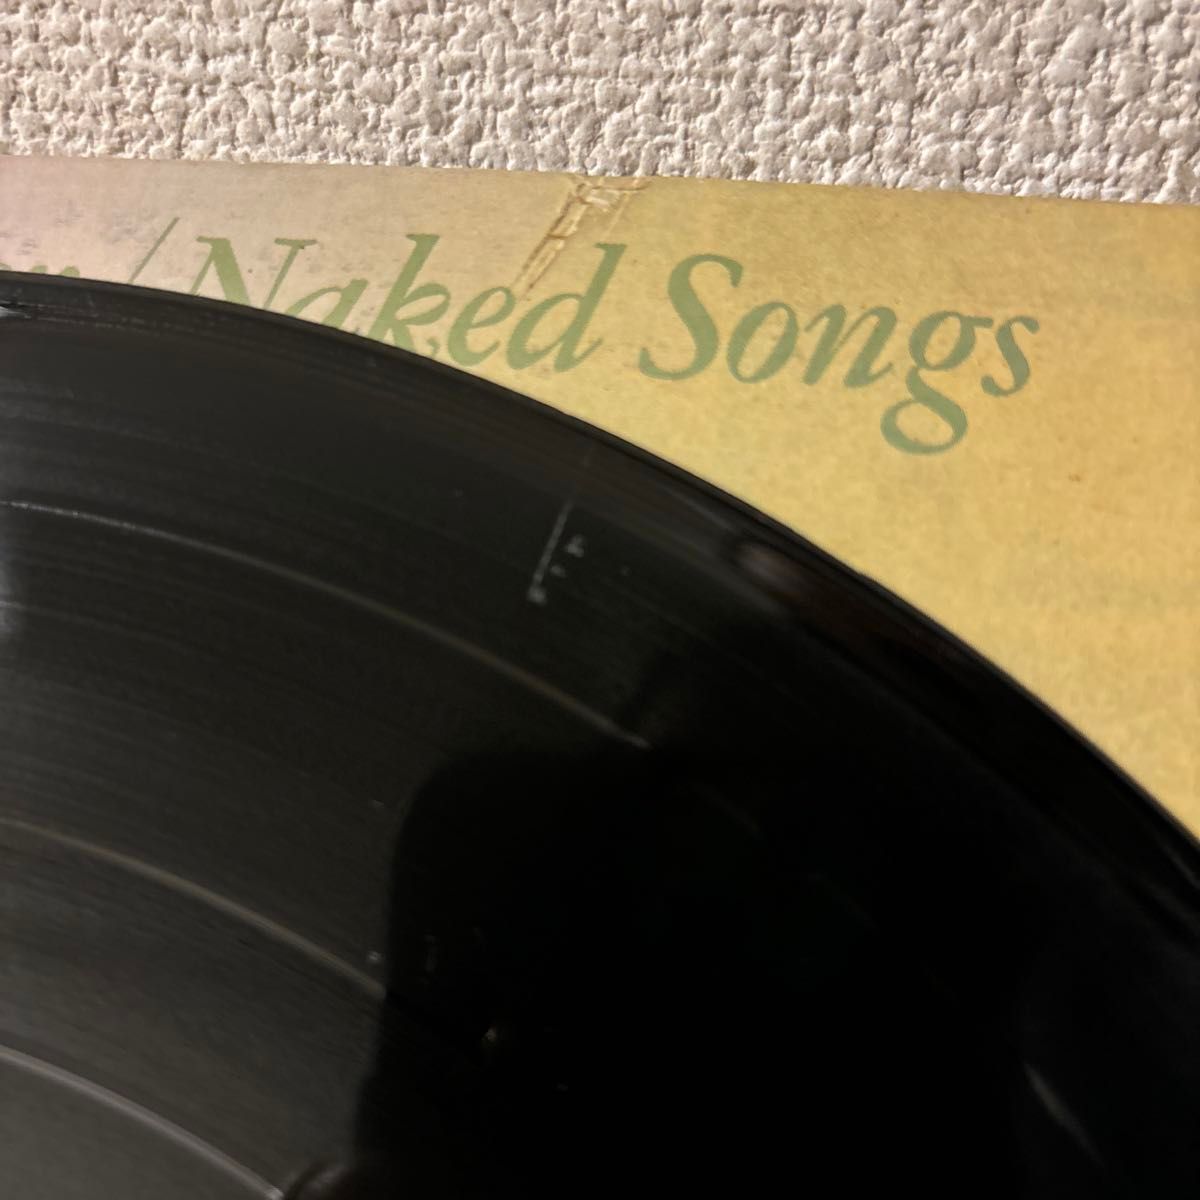 Al Kooper Naked Songs レコード LP アル・クーパー  赤心の歌 Jolie vinyl アナログ